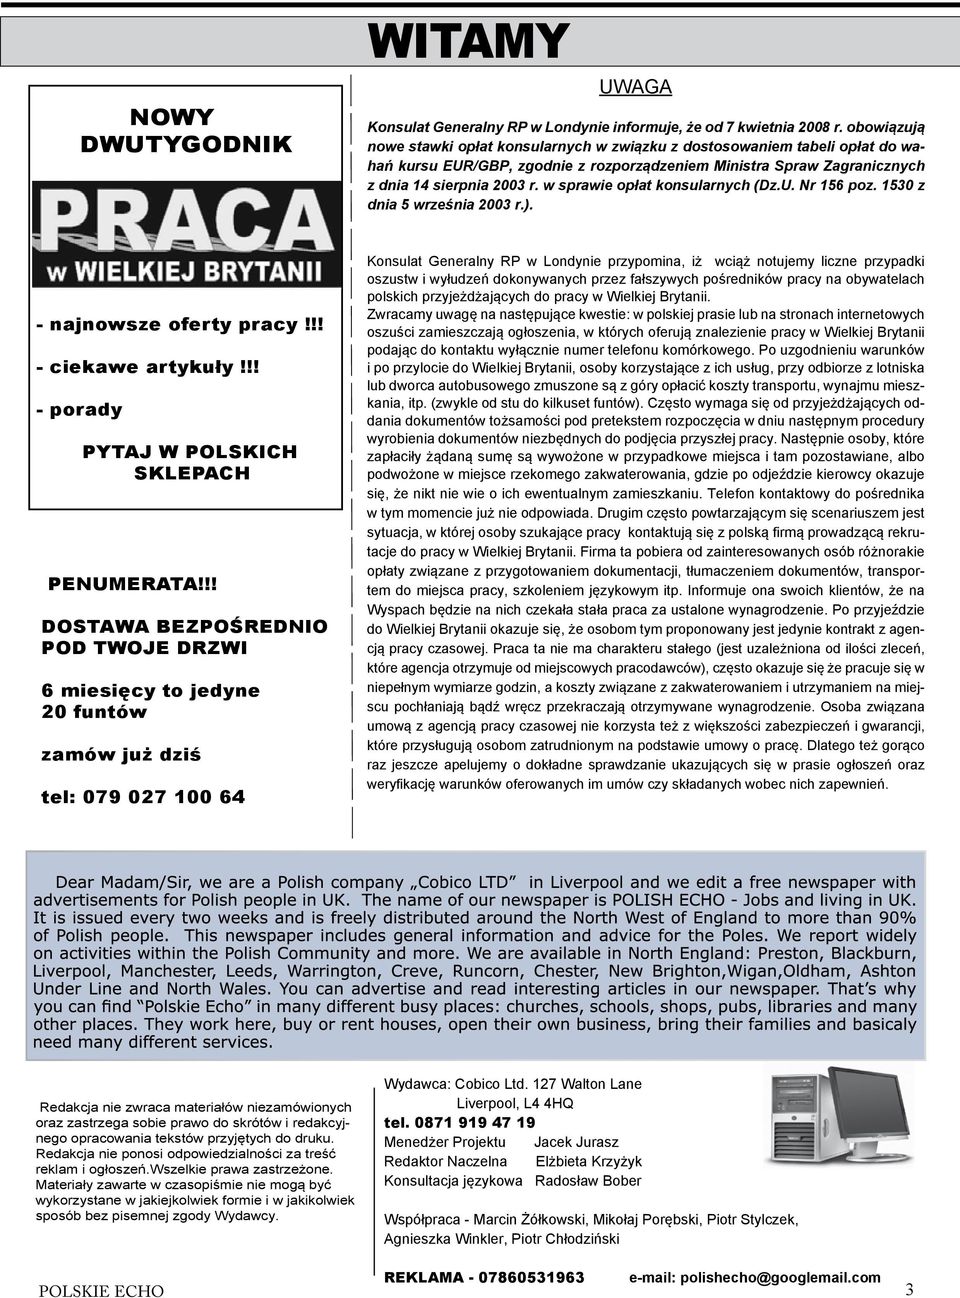 w sprawie opłat konsularnych (Dz.U. Nr 156 poz. 1530 z dnia 5 września 2003 r.). - najnowsze oferty pracy!!! - ciekawe artykuły!!! - porady PYTAJ W POLSKICH SKLEPACH PENUMERATA!